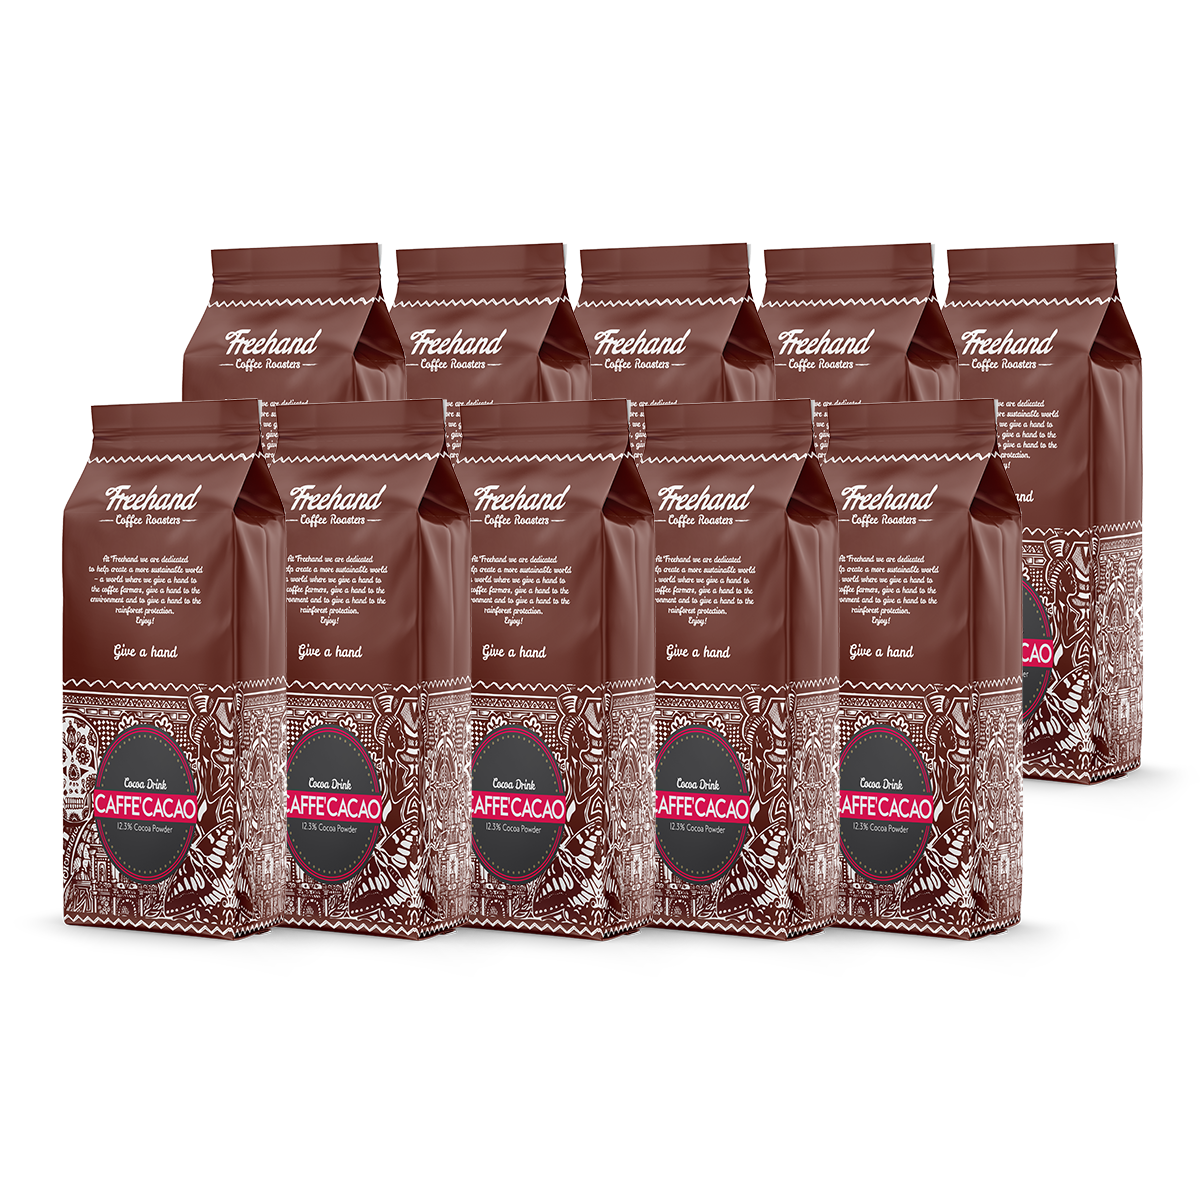 Billede af Freehand Caffe´ Cacao Kakao - 7,5 kg.